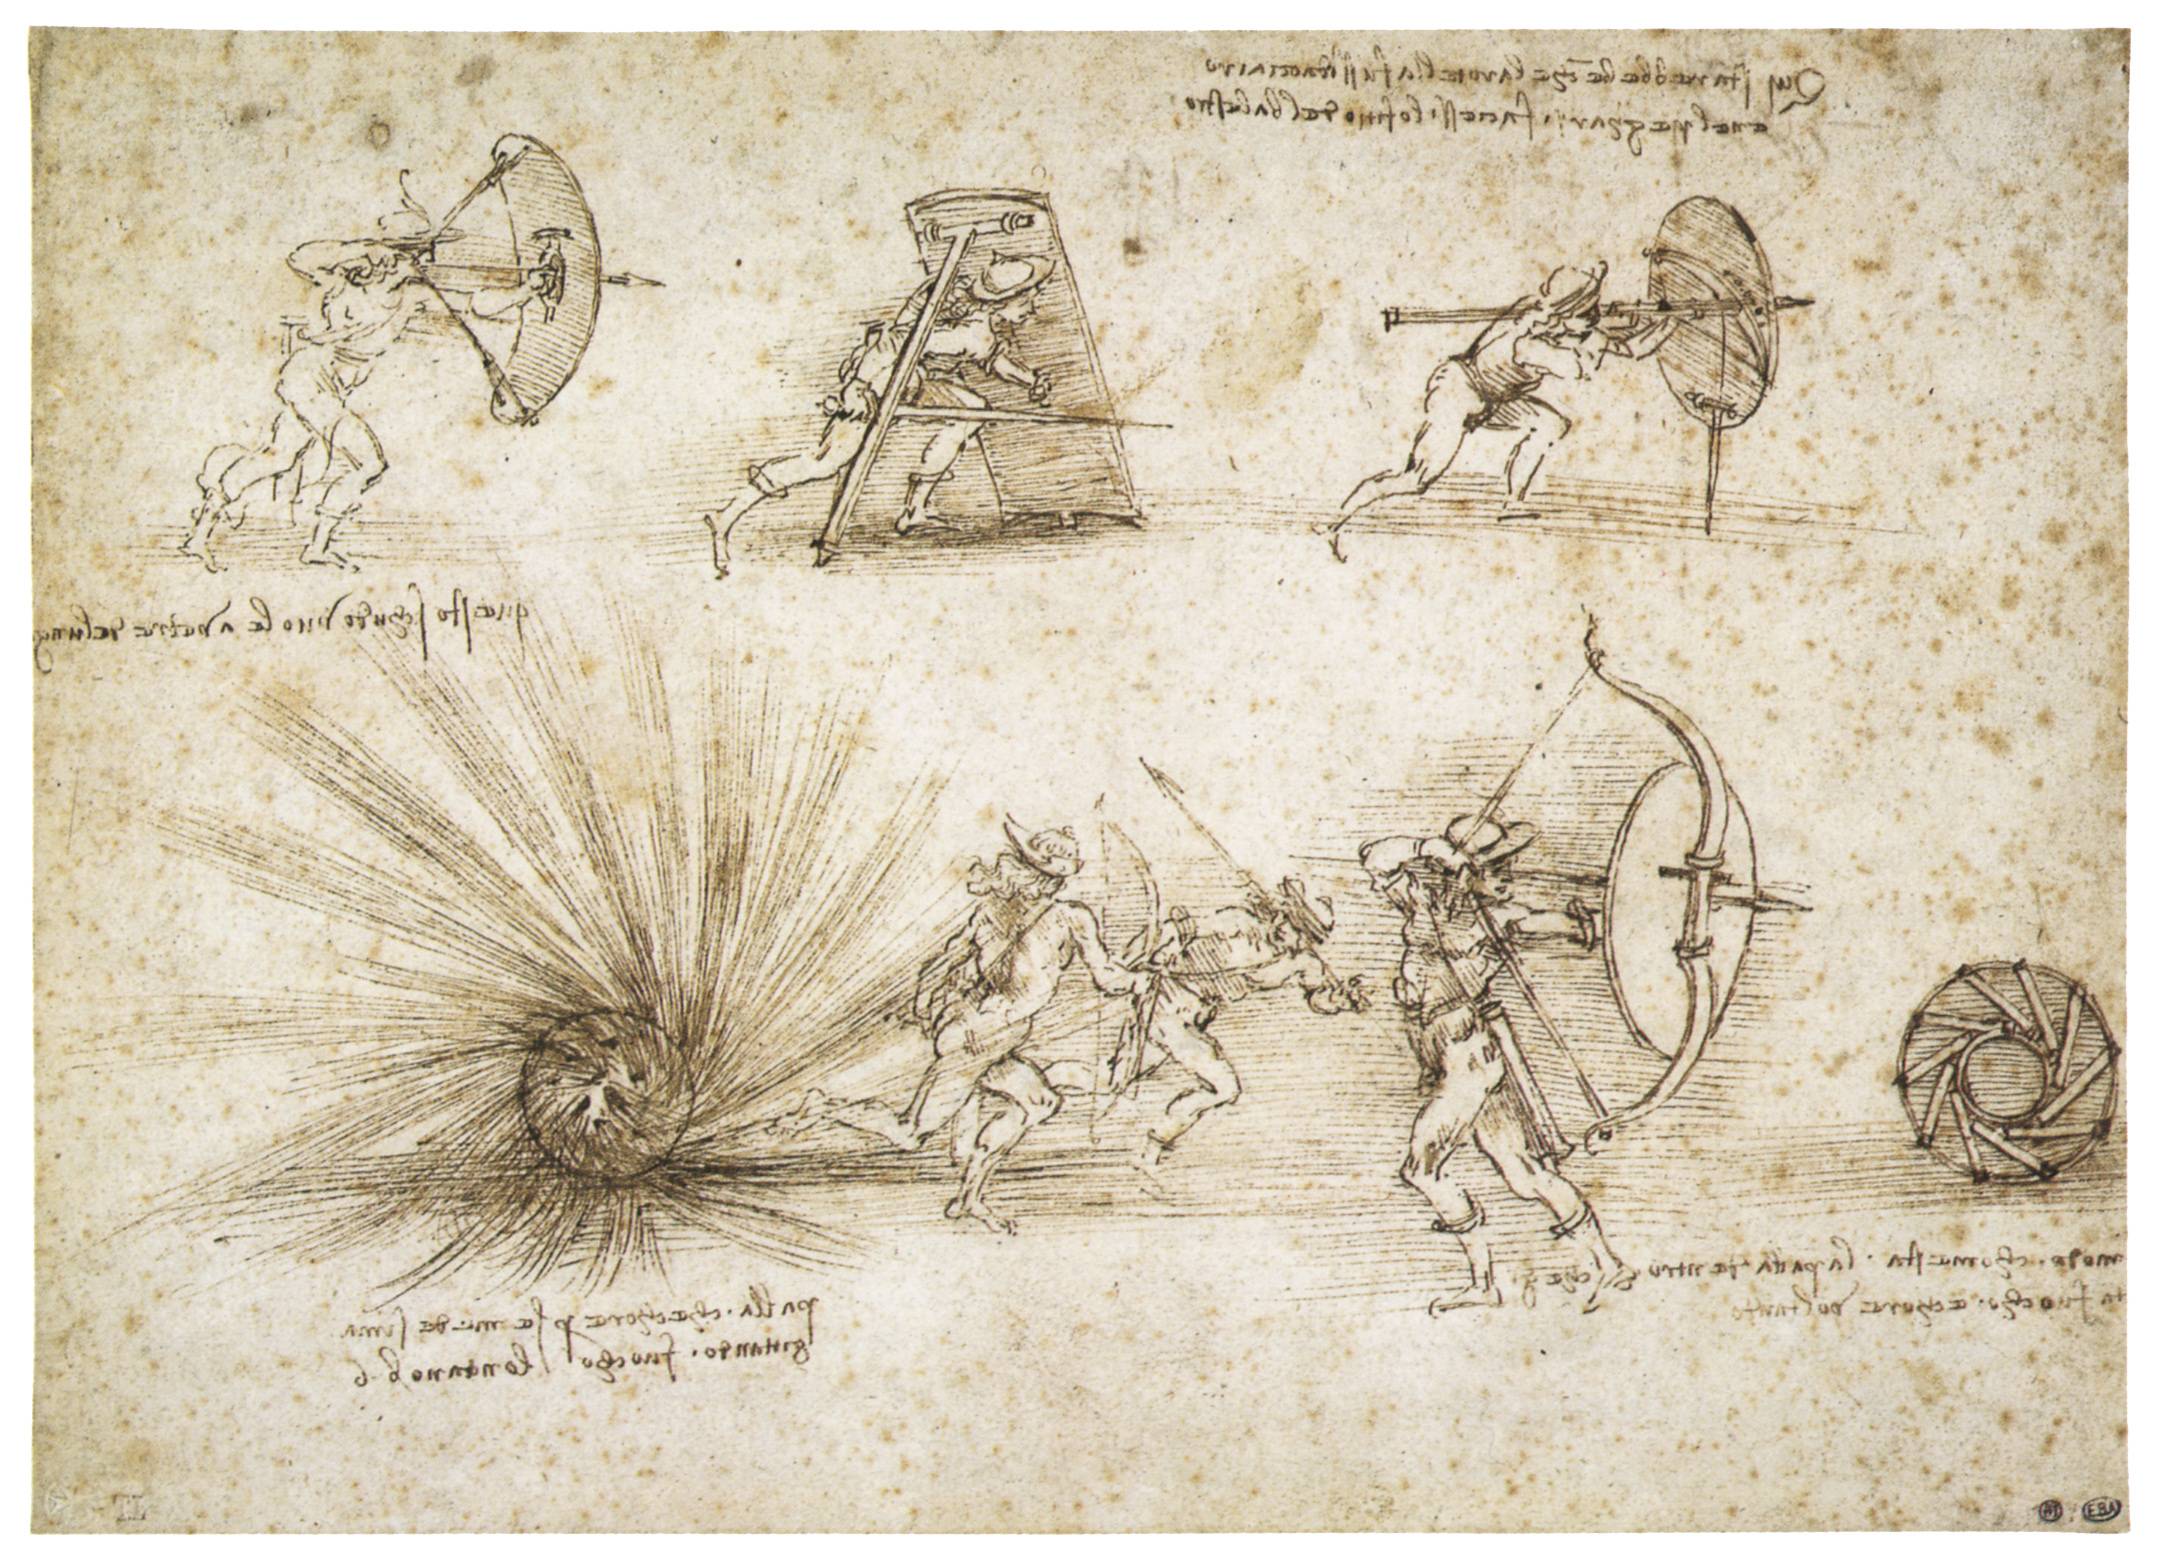 نقاشی نقشه قدیمی و تاریخی باستانی الهام گرفته از لئوناردو داوینچی